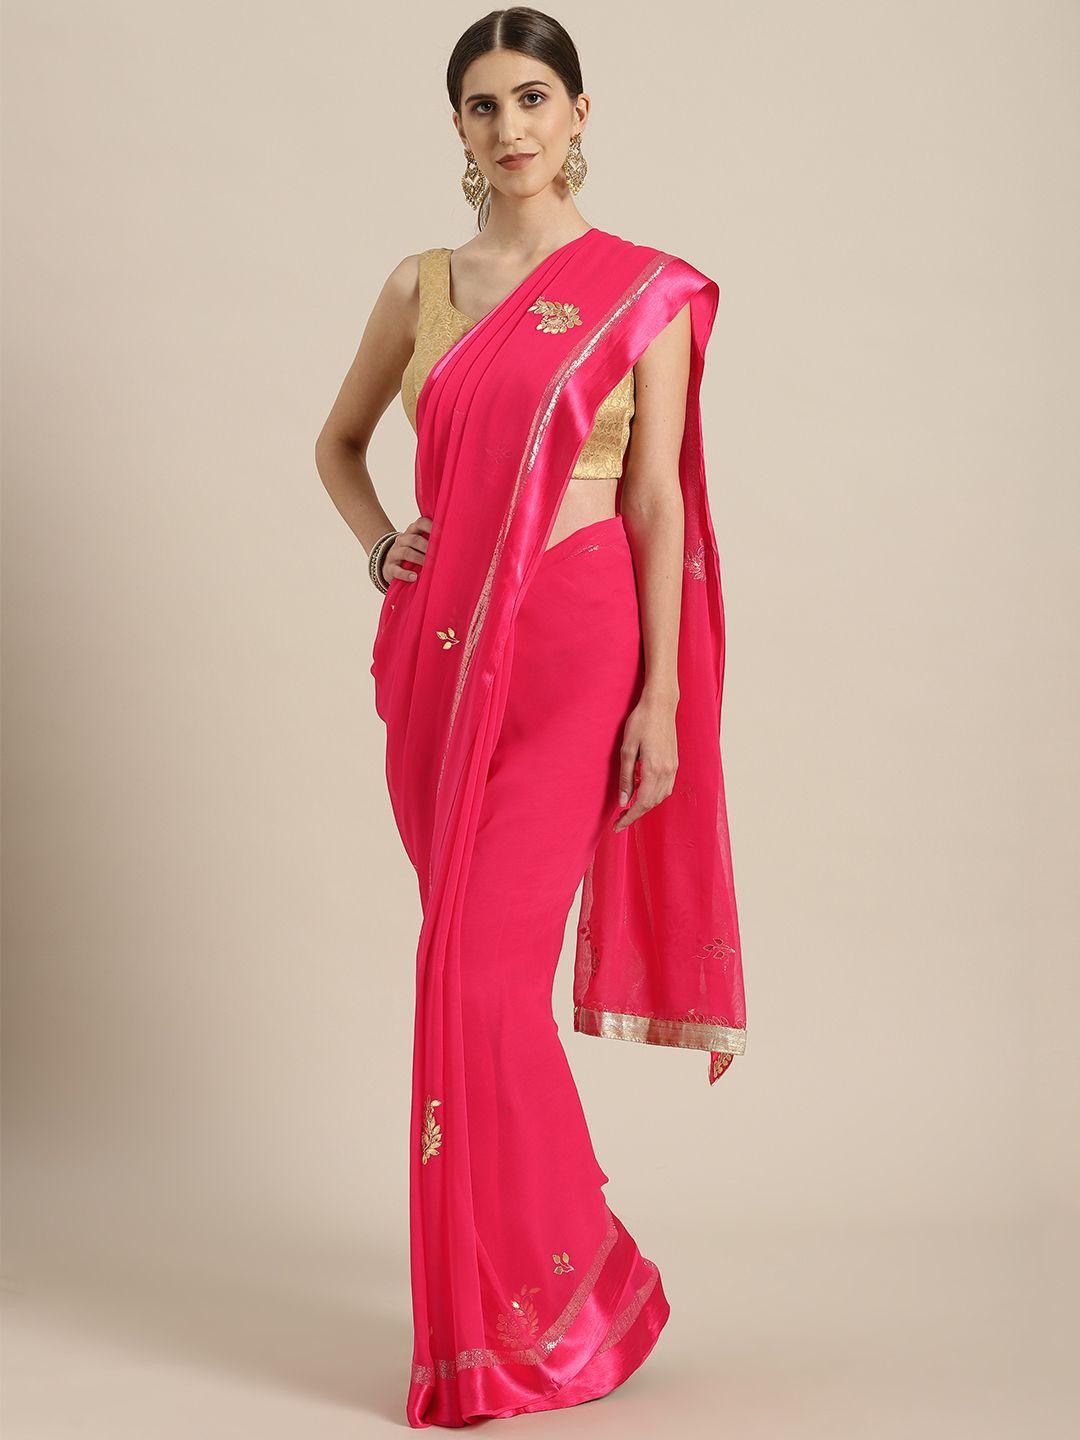 geroo jaipur pink & golden handcrafted embellished saree